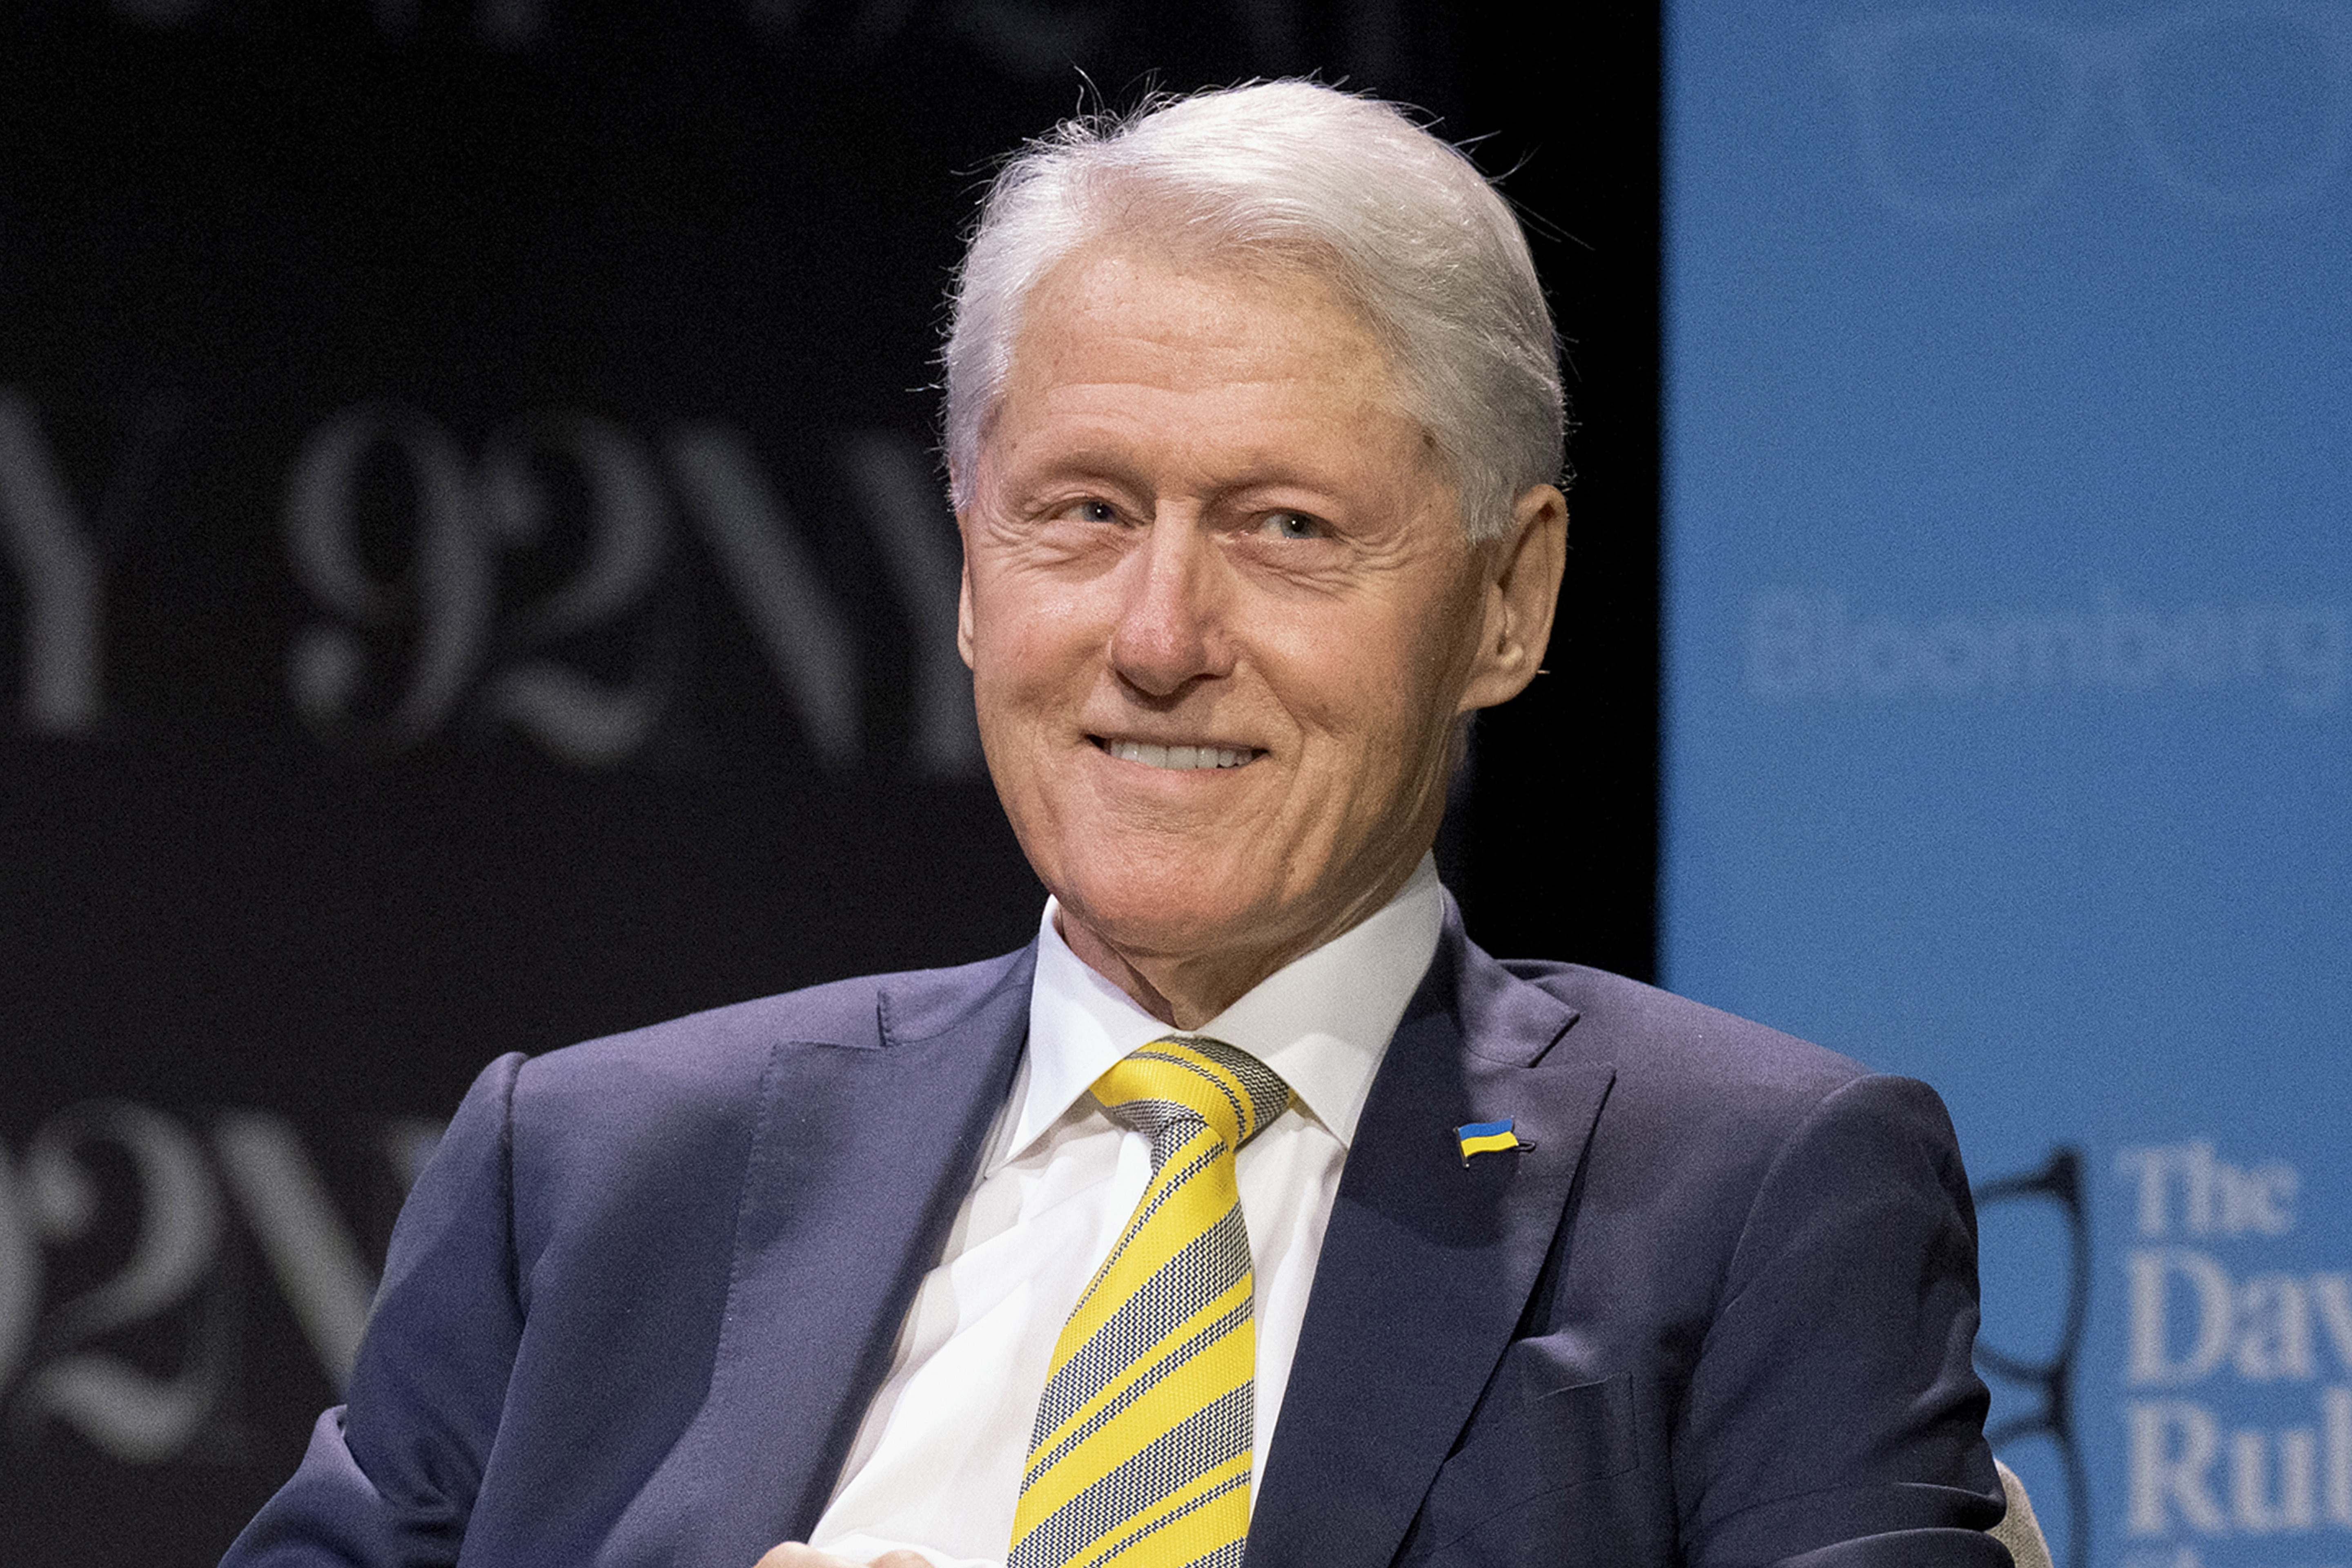 Den Dokumenten zufolge behauptete Sjoberg, Epstein habe ihrem ehemaligen Präsidenten Bill Clinton angeblich gesagt, dass er sie „jung“ mochte, als er über Mädchen sprach